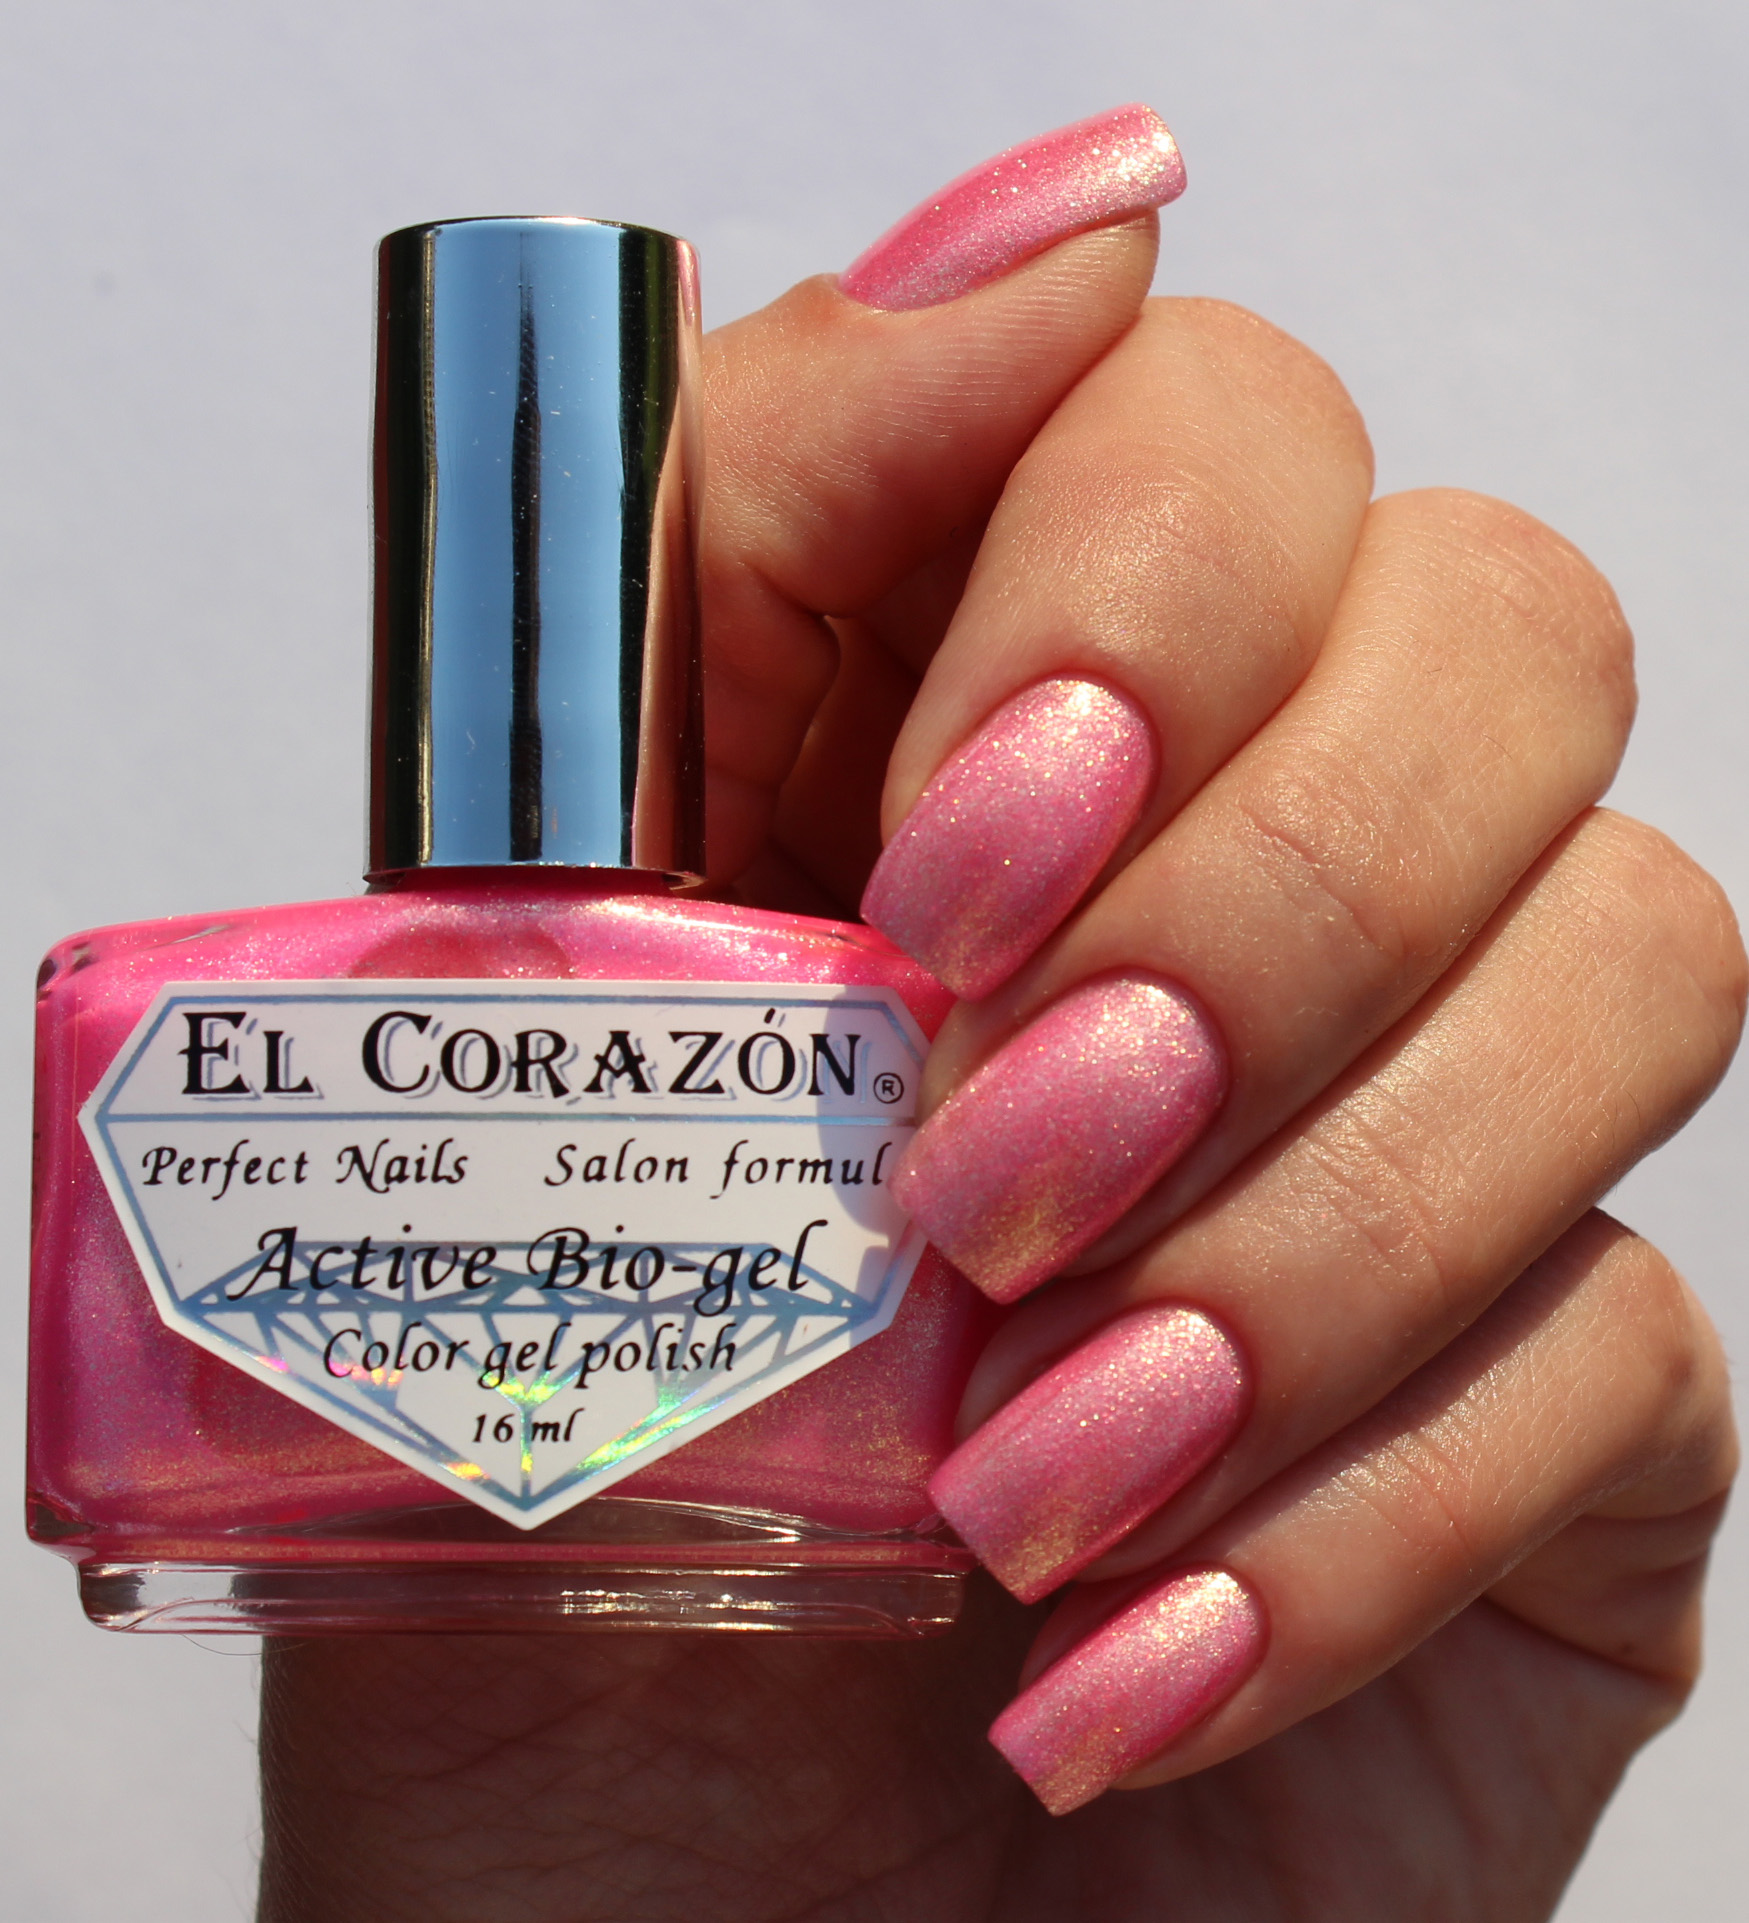 EL Corazon Active Bio-gel Color gel polish Magic №423/563 Magic rosebud